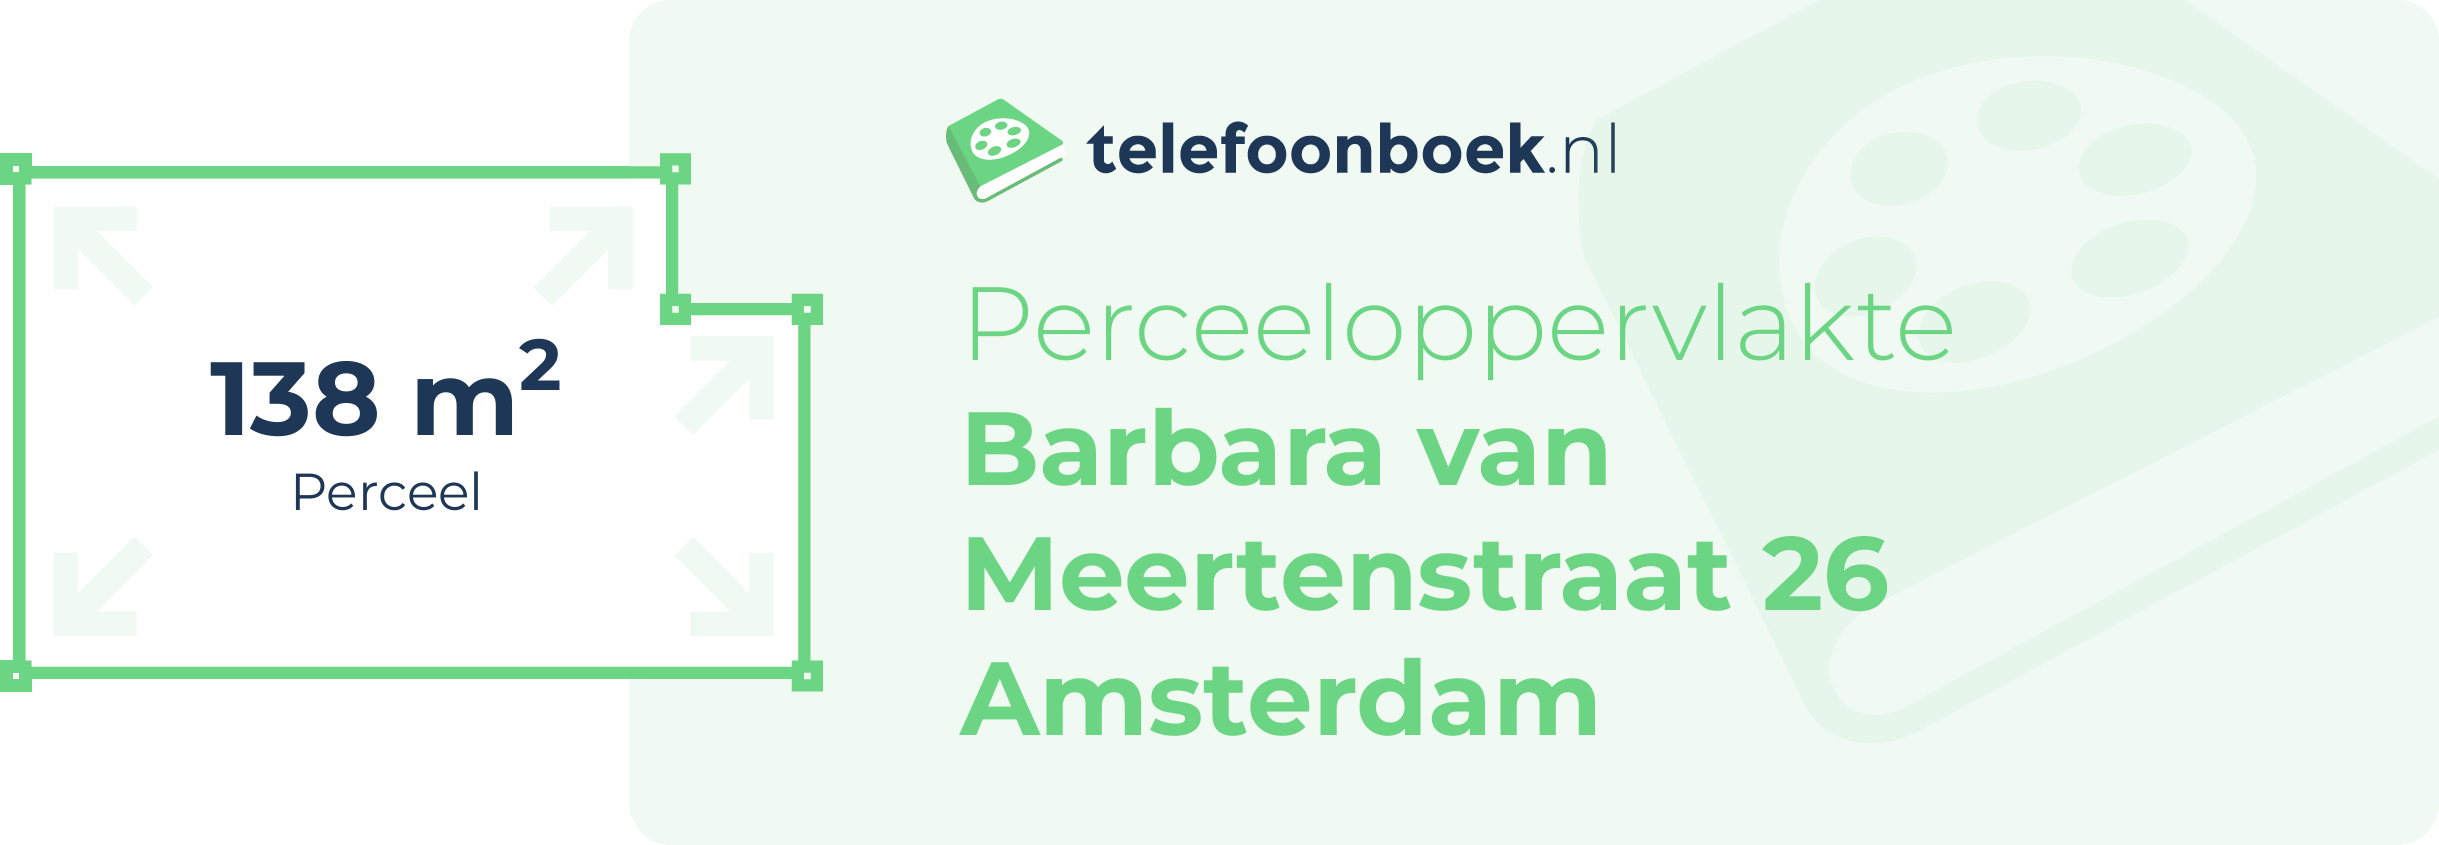 Perceeloppervlakte Barbara Van Meertenstraat 26 Amsterdam